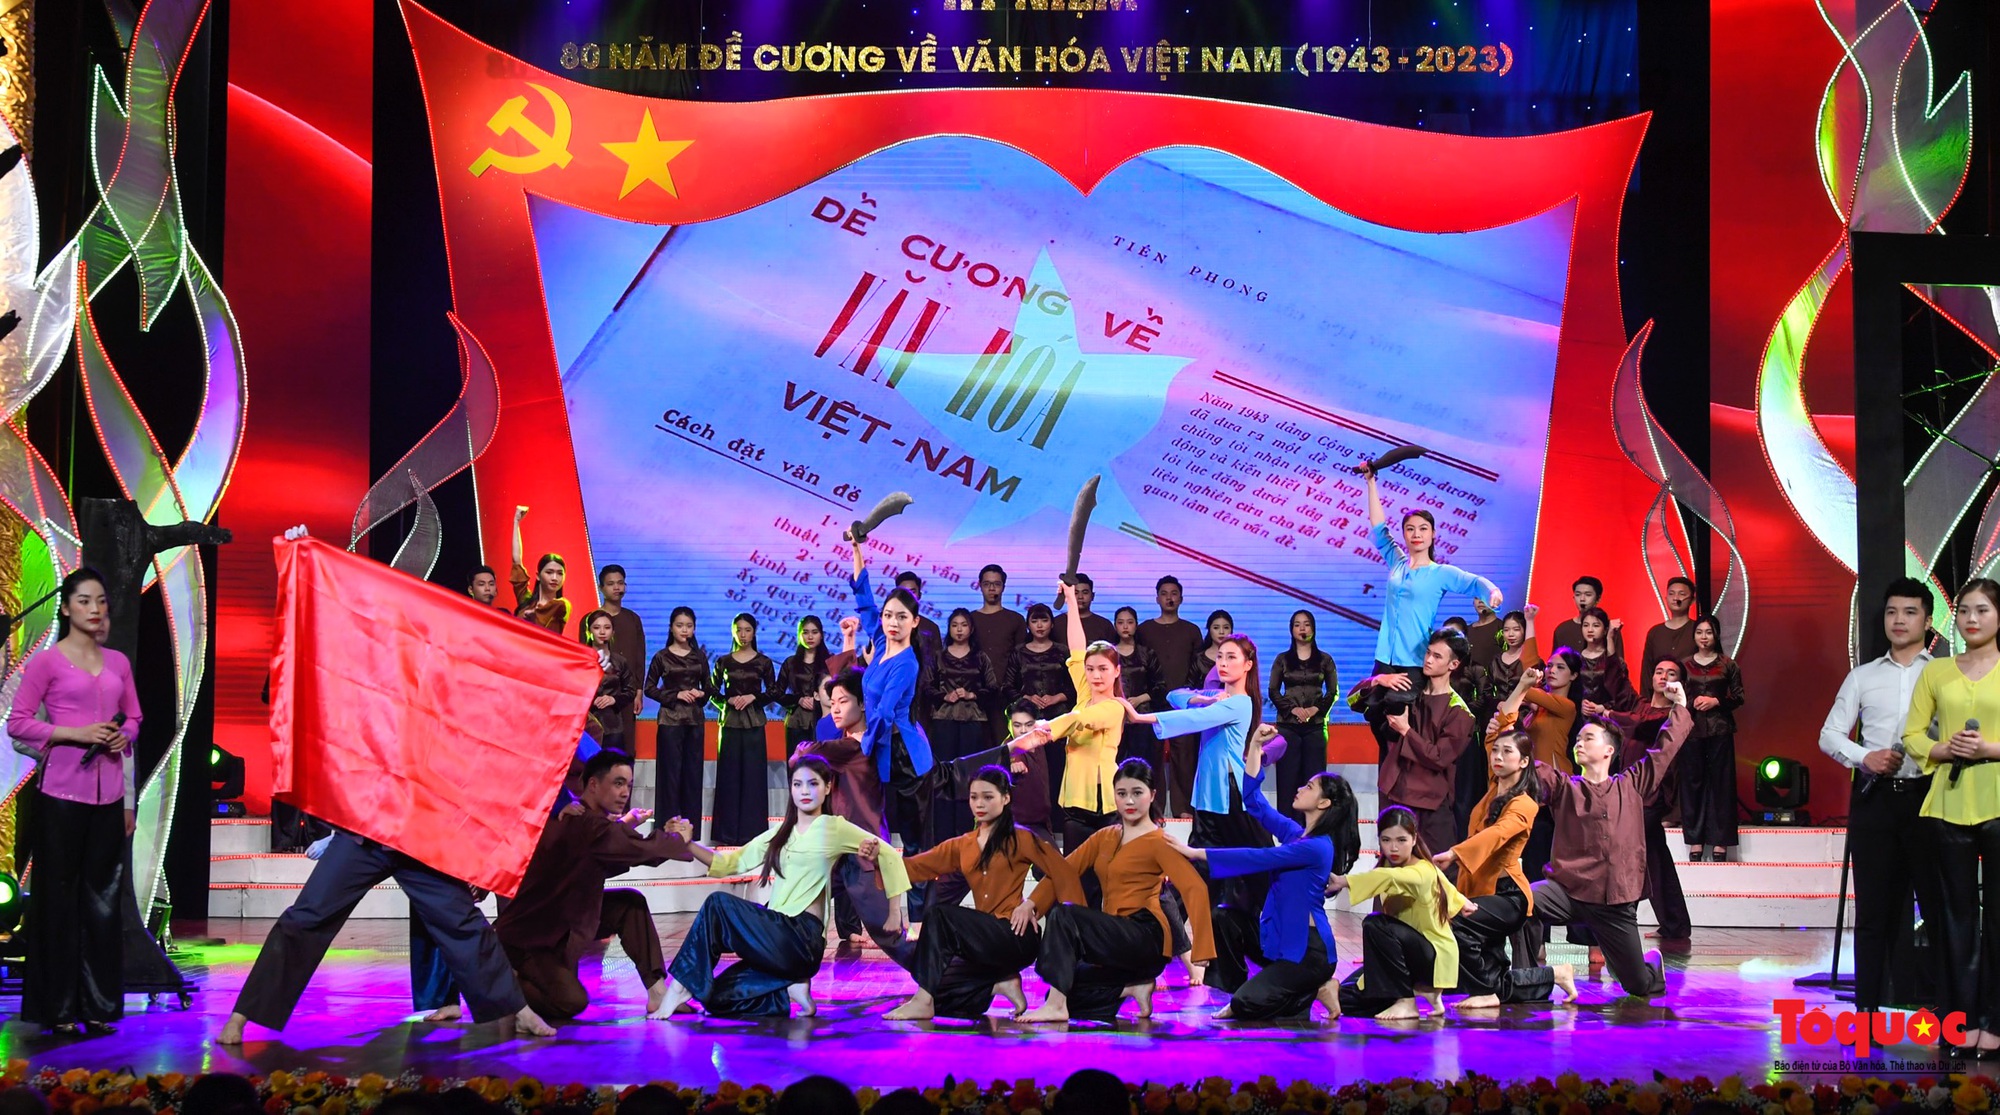 Chùm ảnh: Lễ kỷ niệm và chương trình nghệ thuật đặc biệt kỷ niệm 80 năm ra đời Đề cương văn hóa Việt Nam - Ảnh 11.